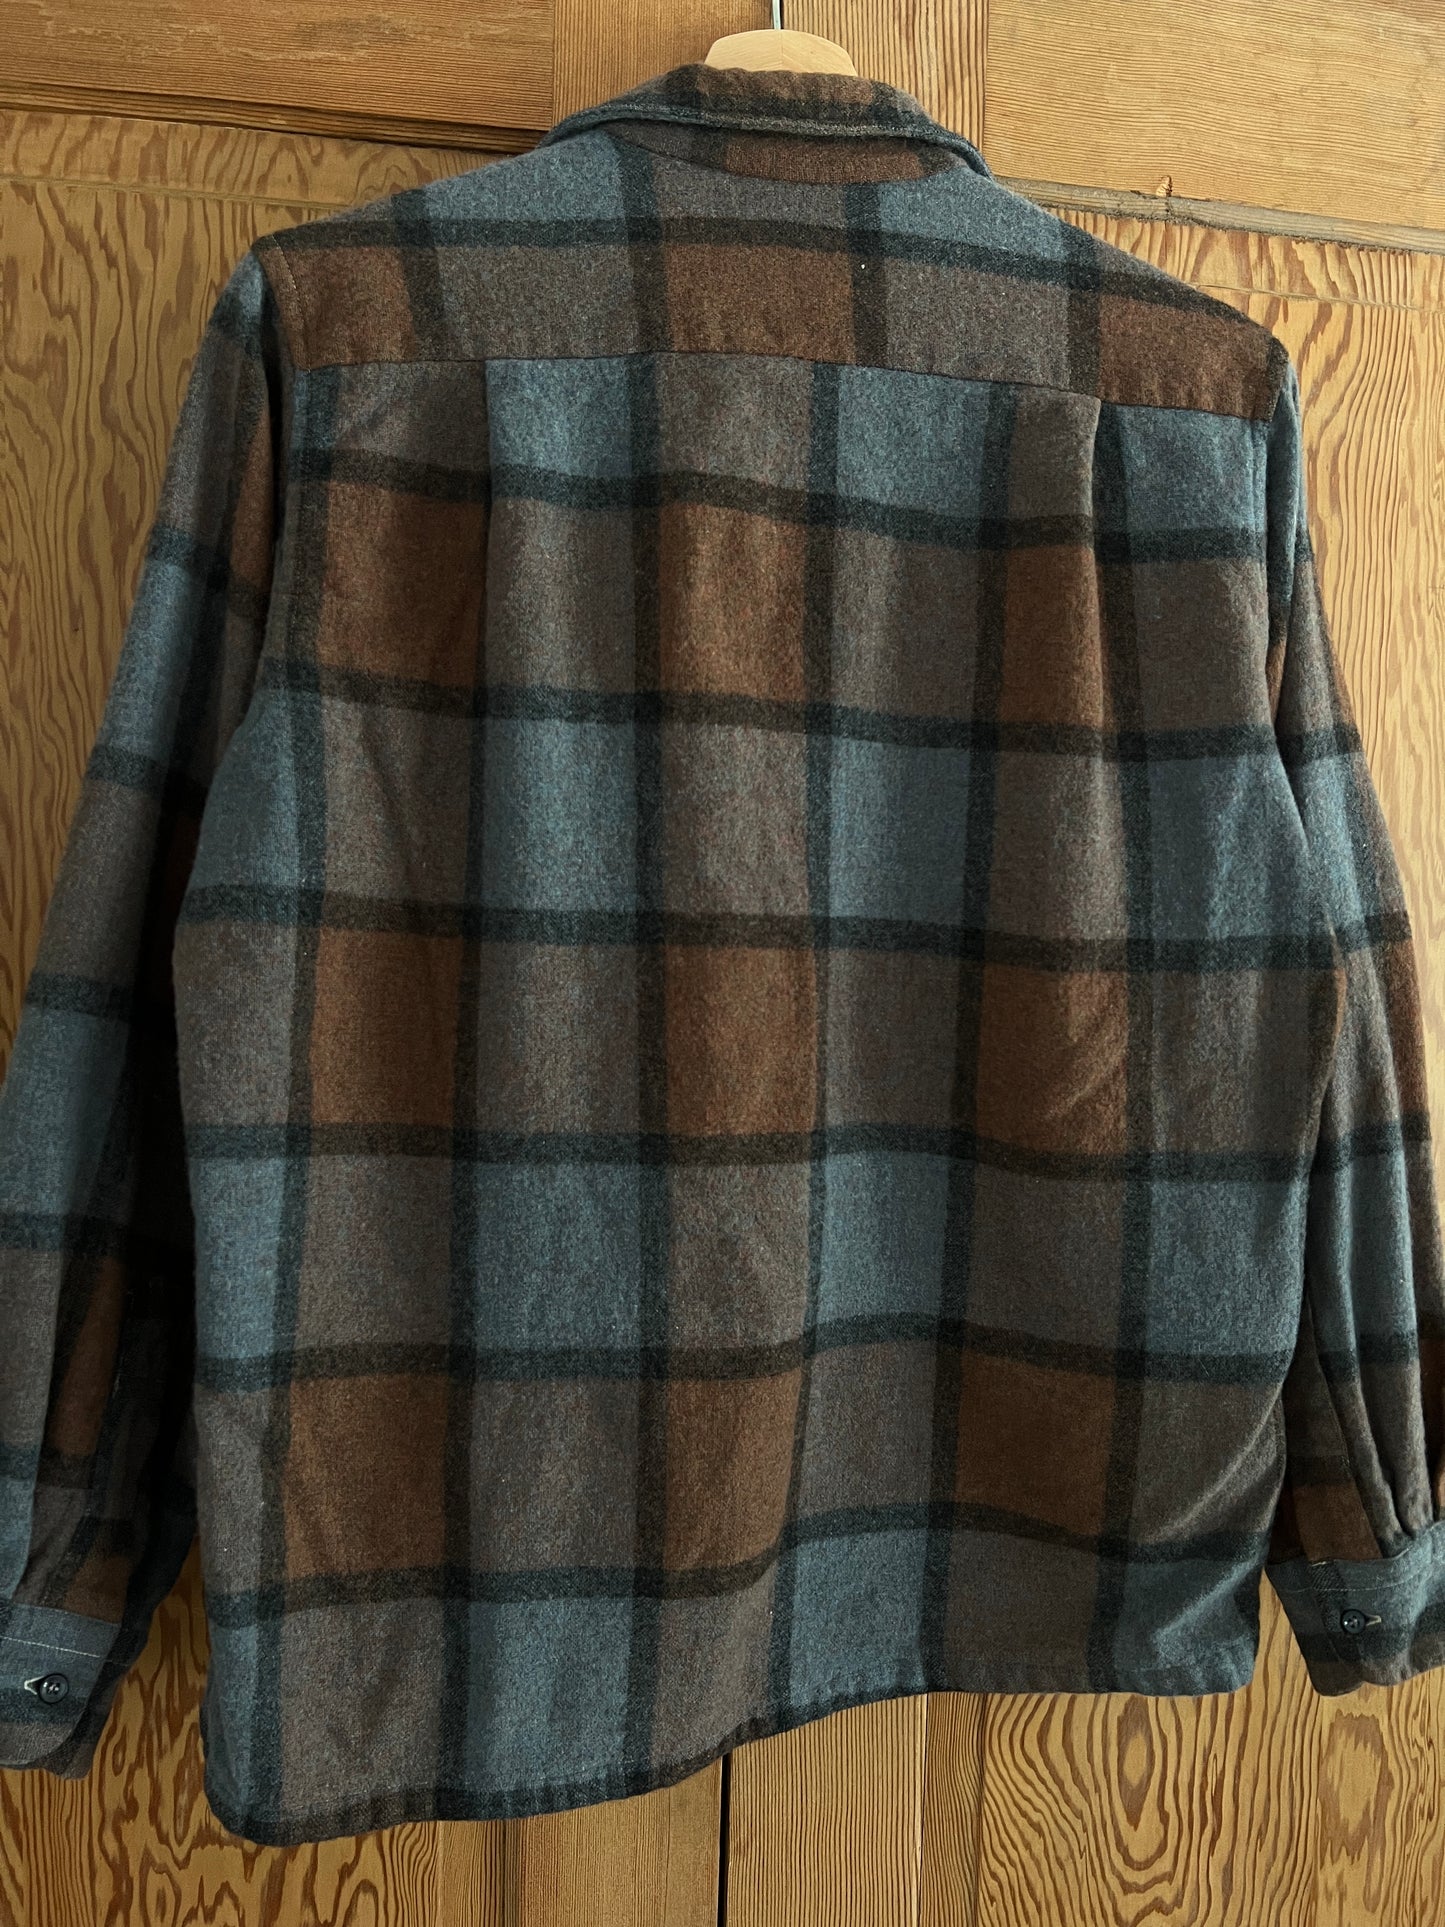 Wool plaid shirt